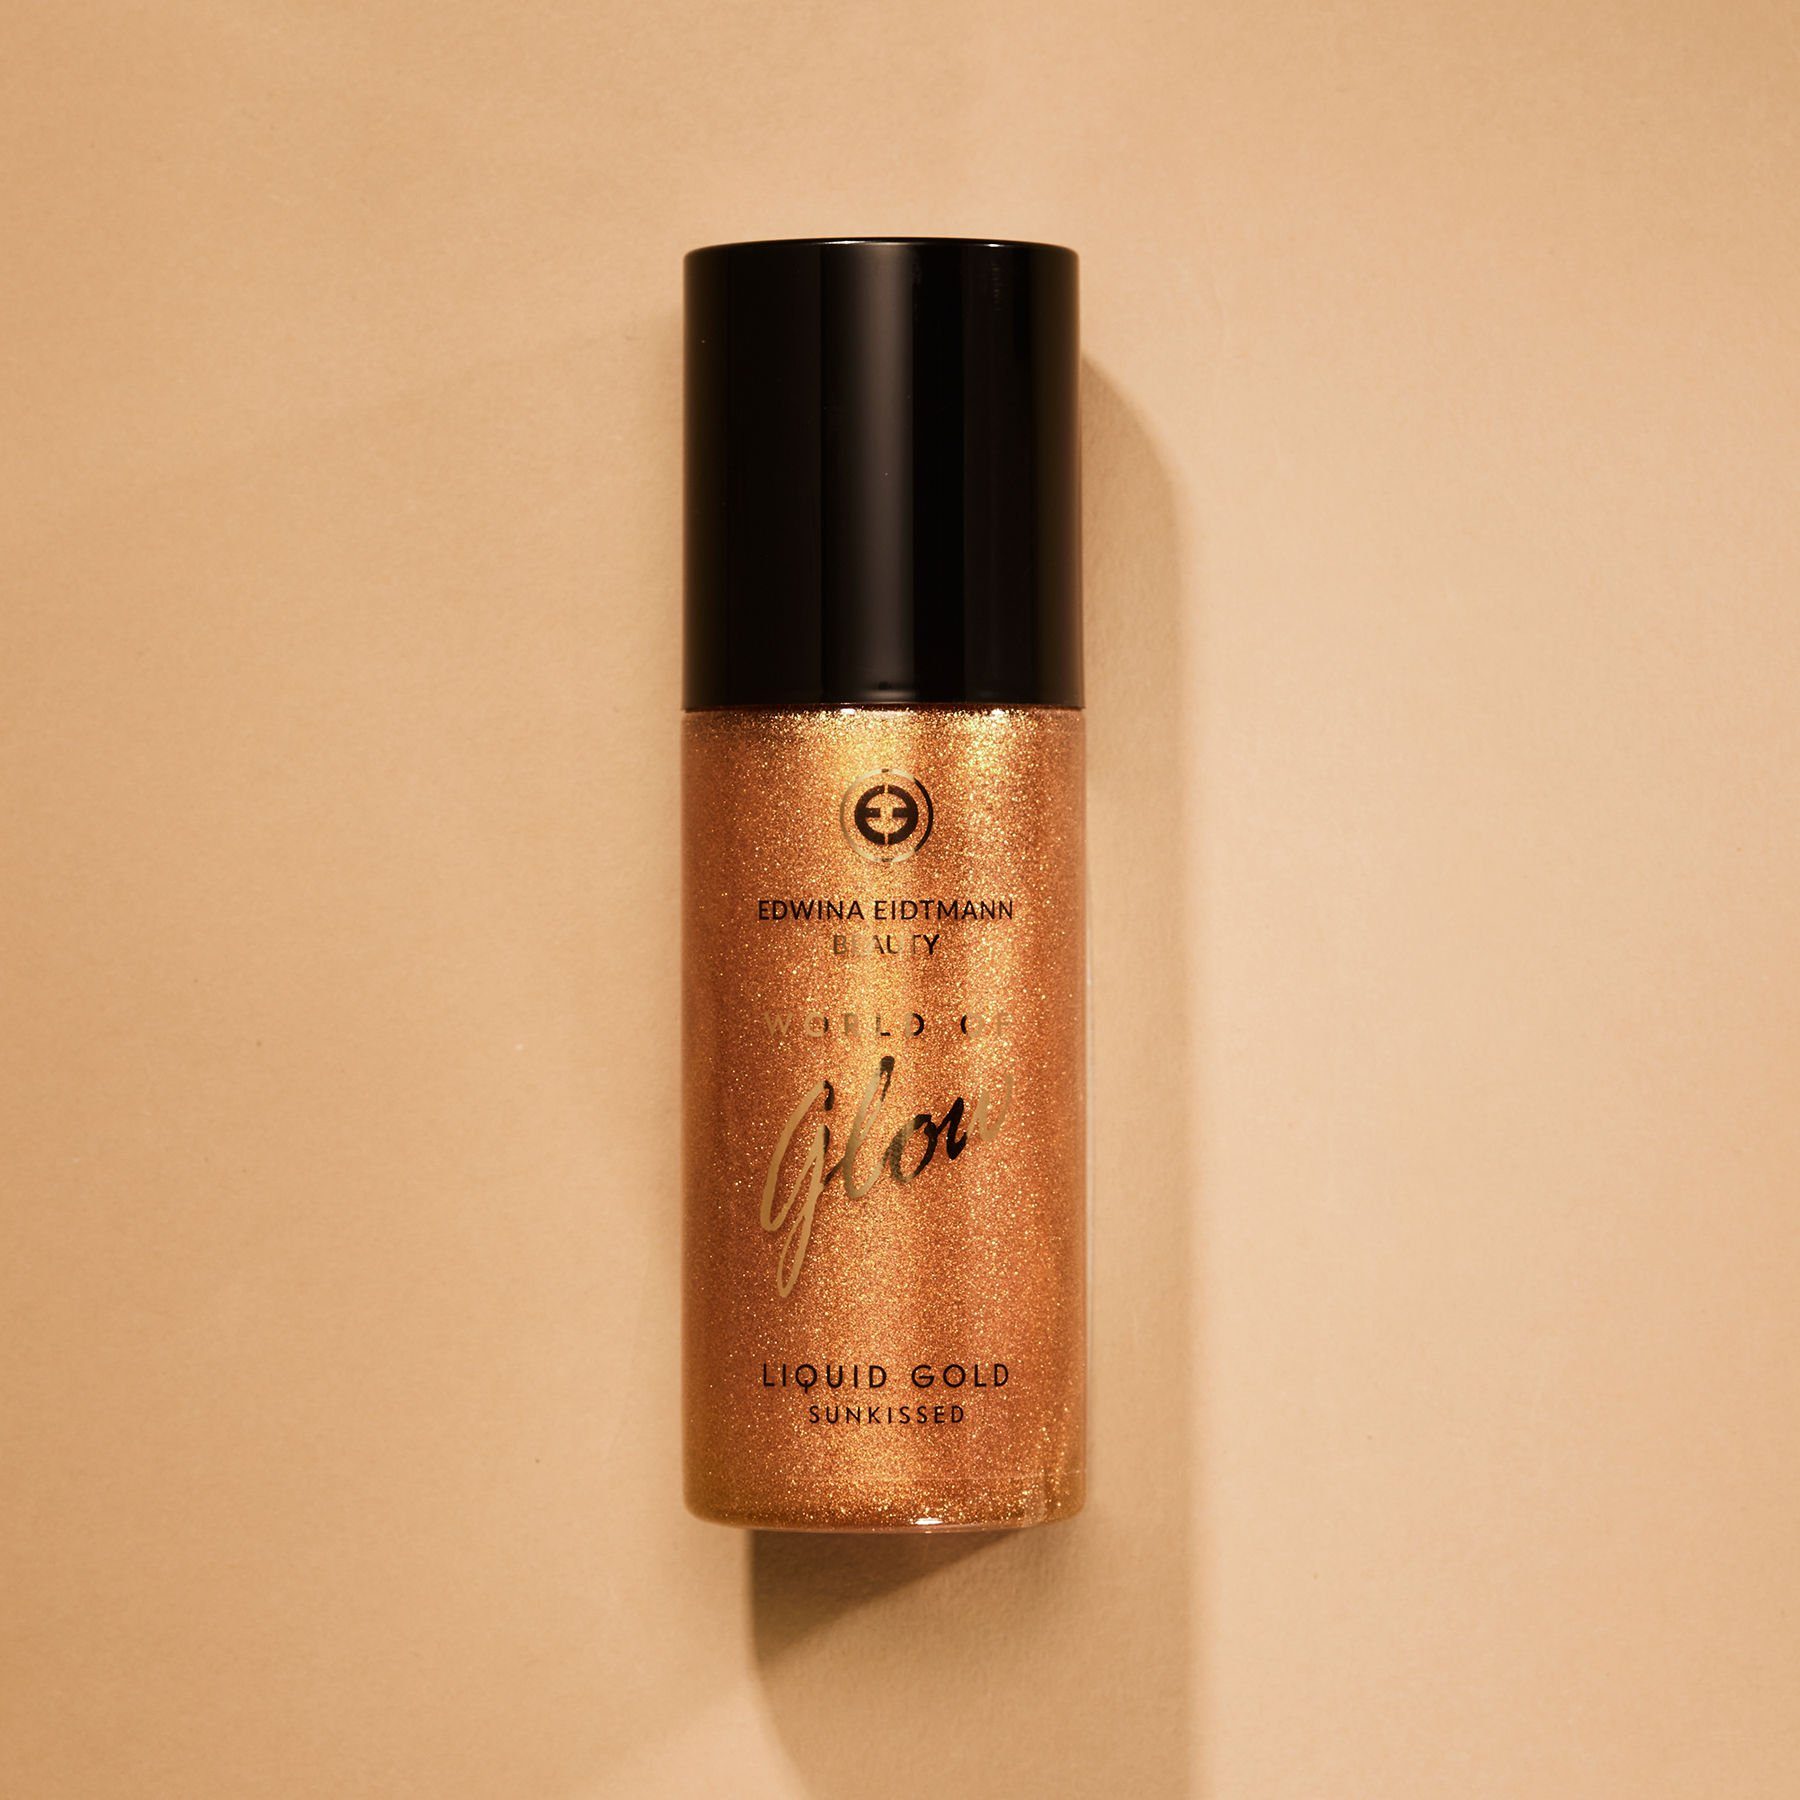 Edwina Eidtmann Körperspray Liquid "World Gesichts- & & und Glow" Parfum Schimmer Sunkissed, Effekt für Gold Haare sommerliches of Körper